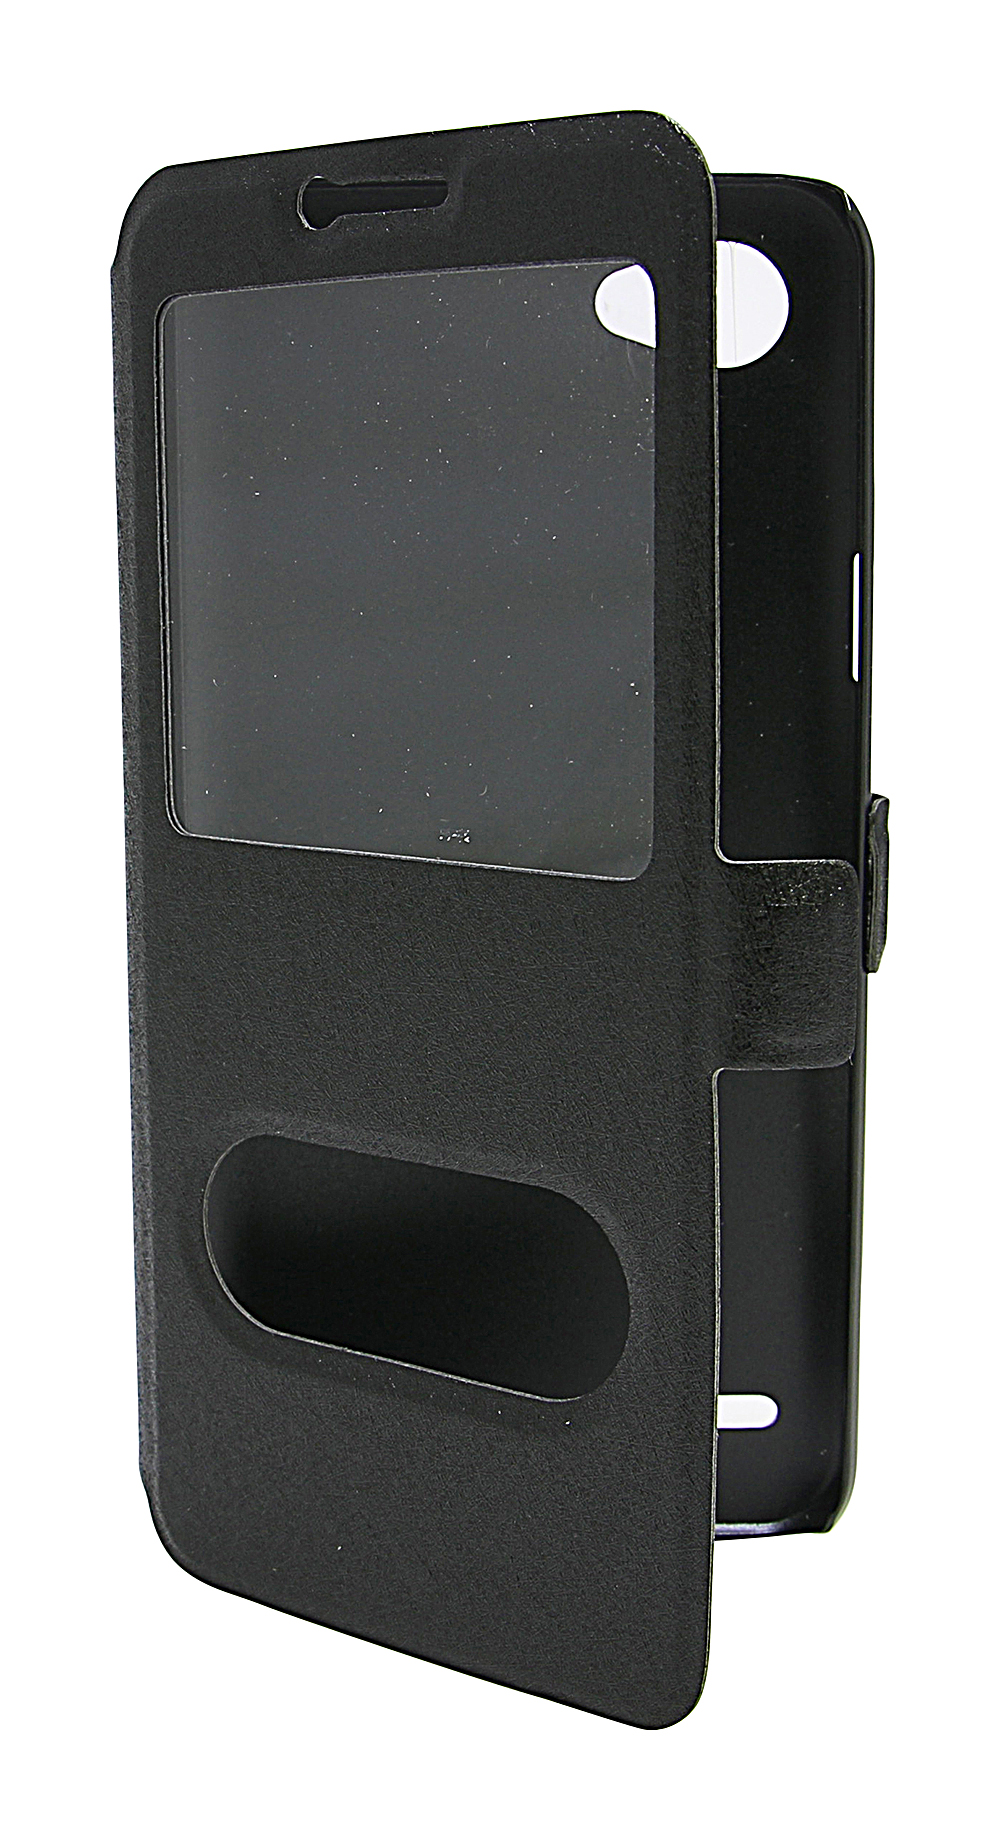 Flipcase LG Q6 (M700N)